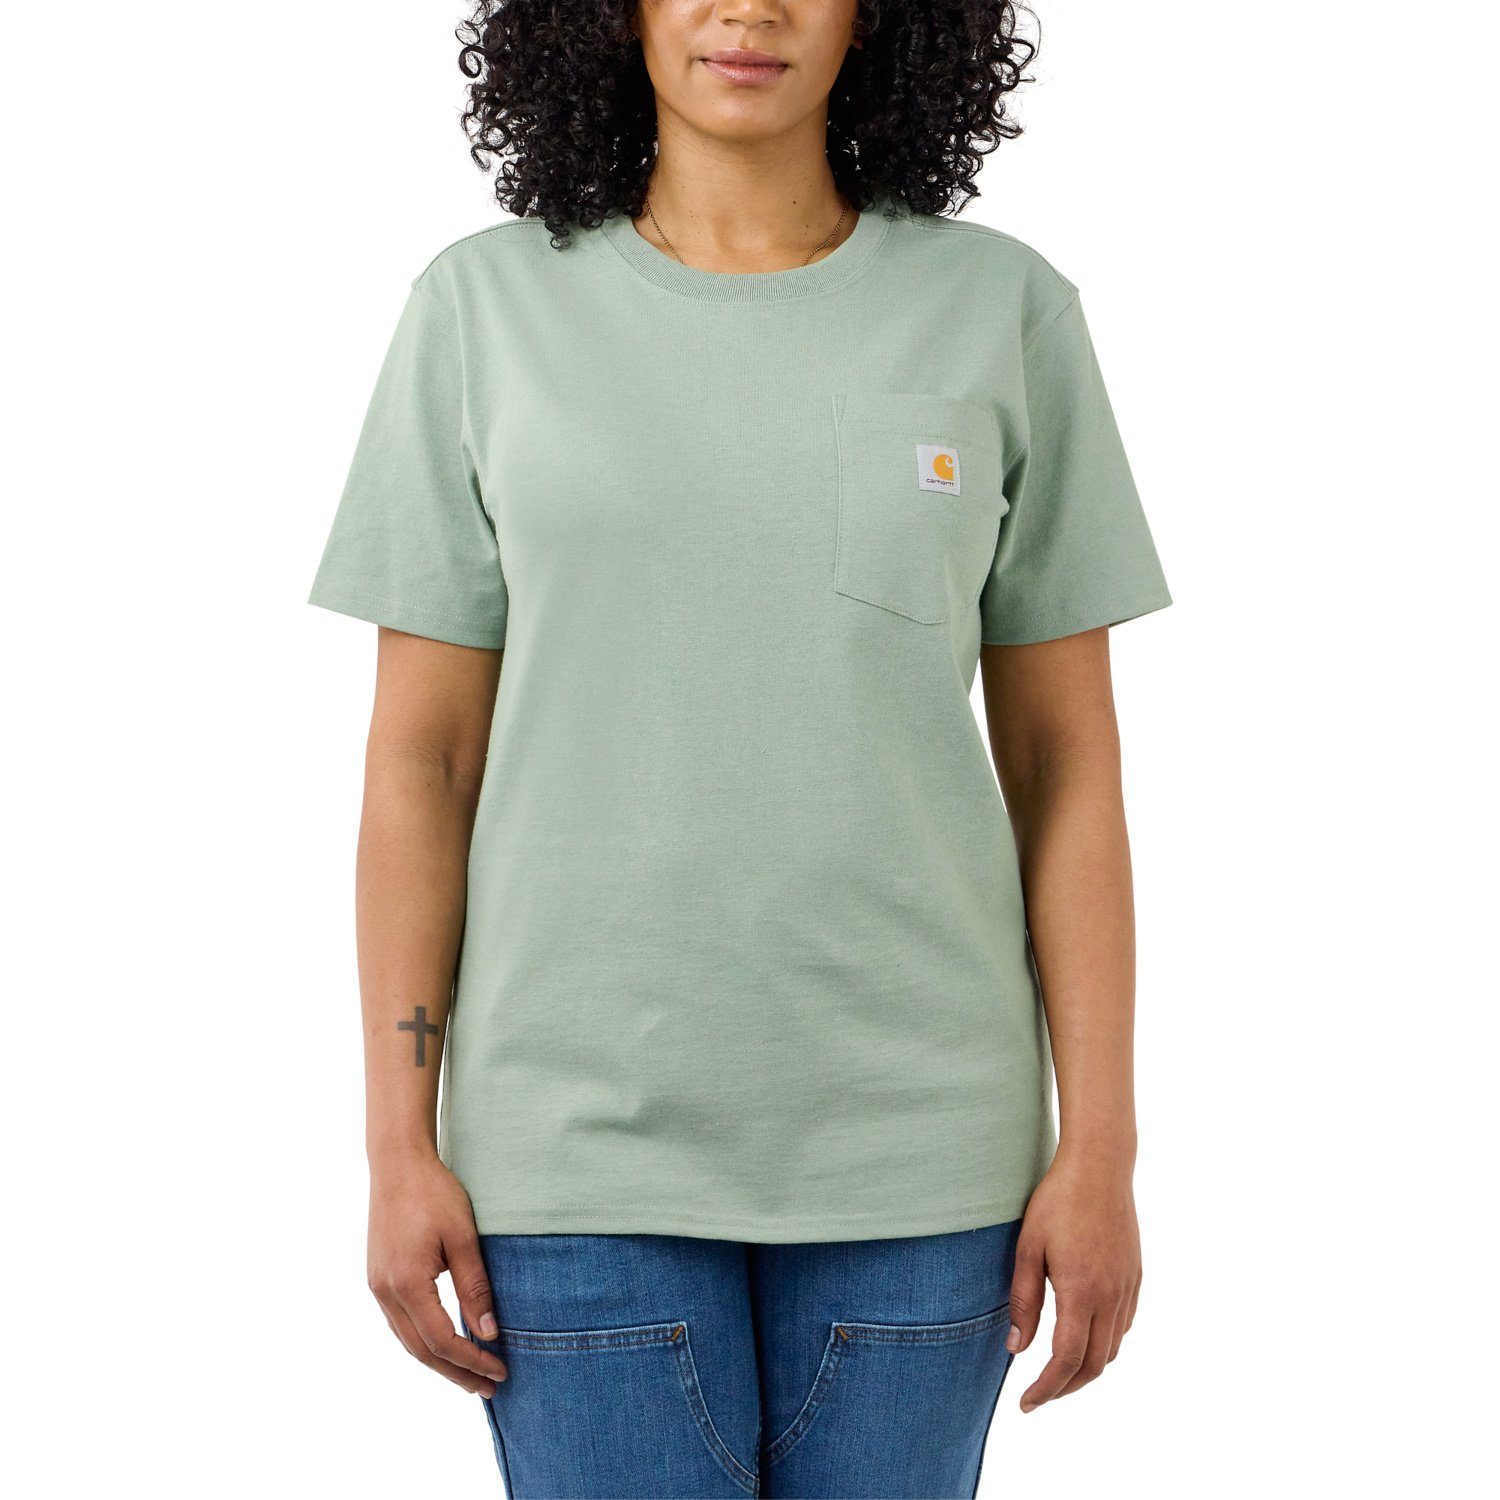 Carhartt Heavyweight T-Shirt Pocket Carhartt Adult T-Shirt Fit jade heather Damen Short-Sleeve Loose